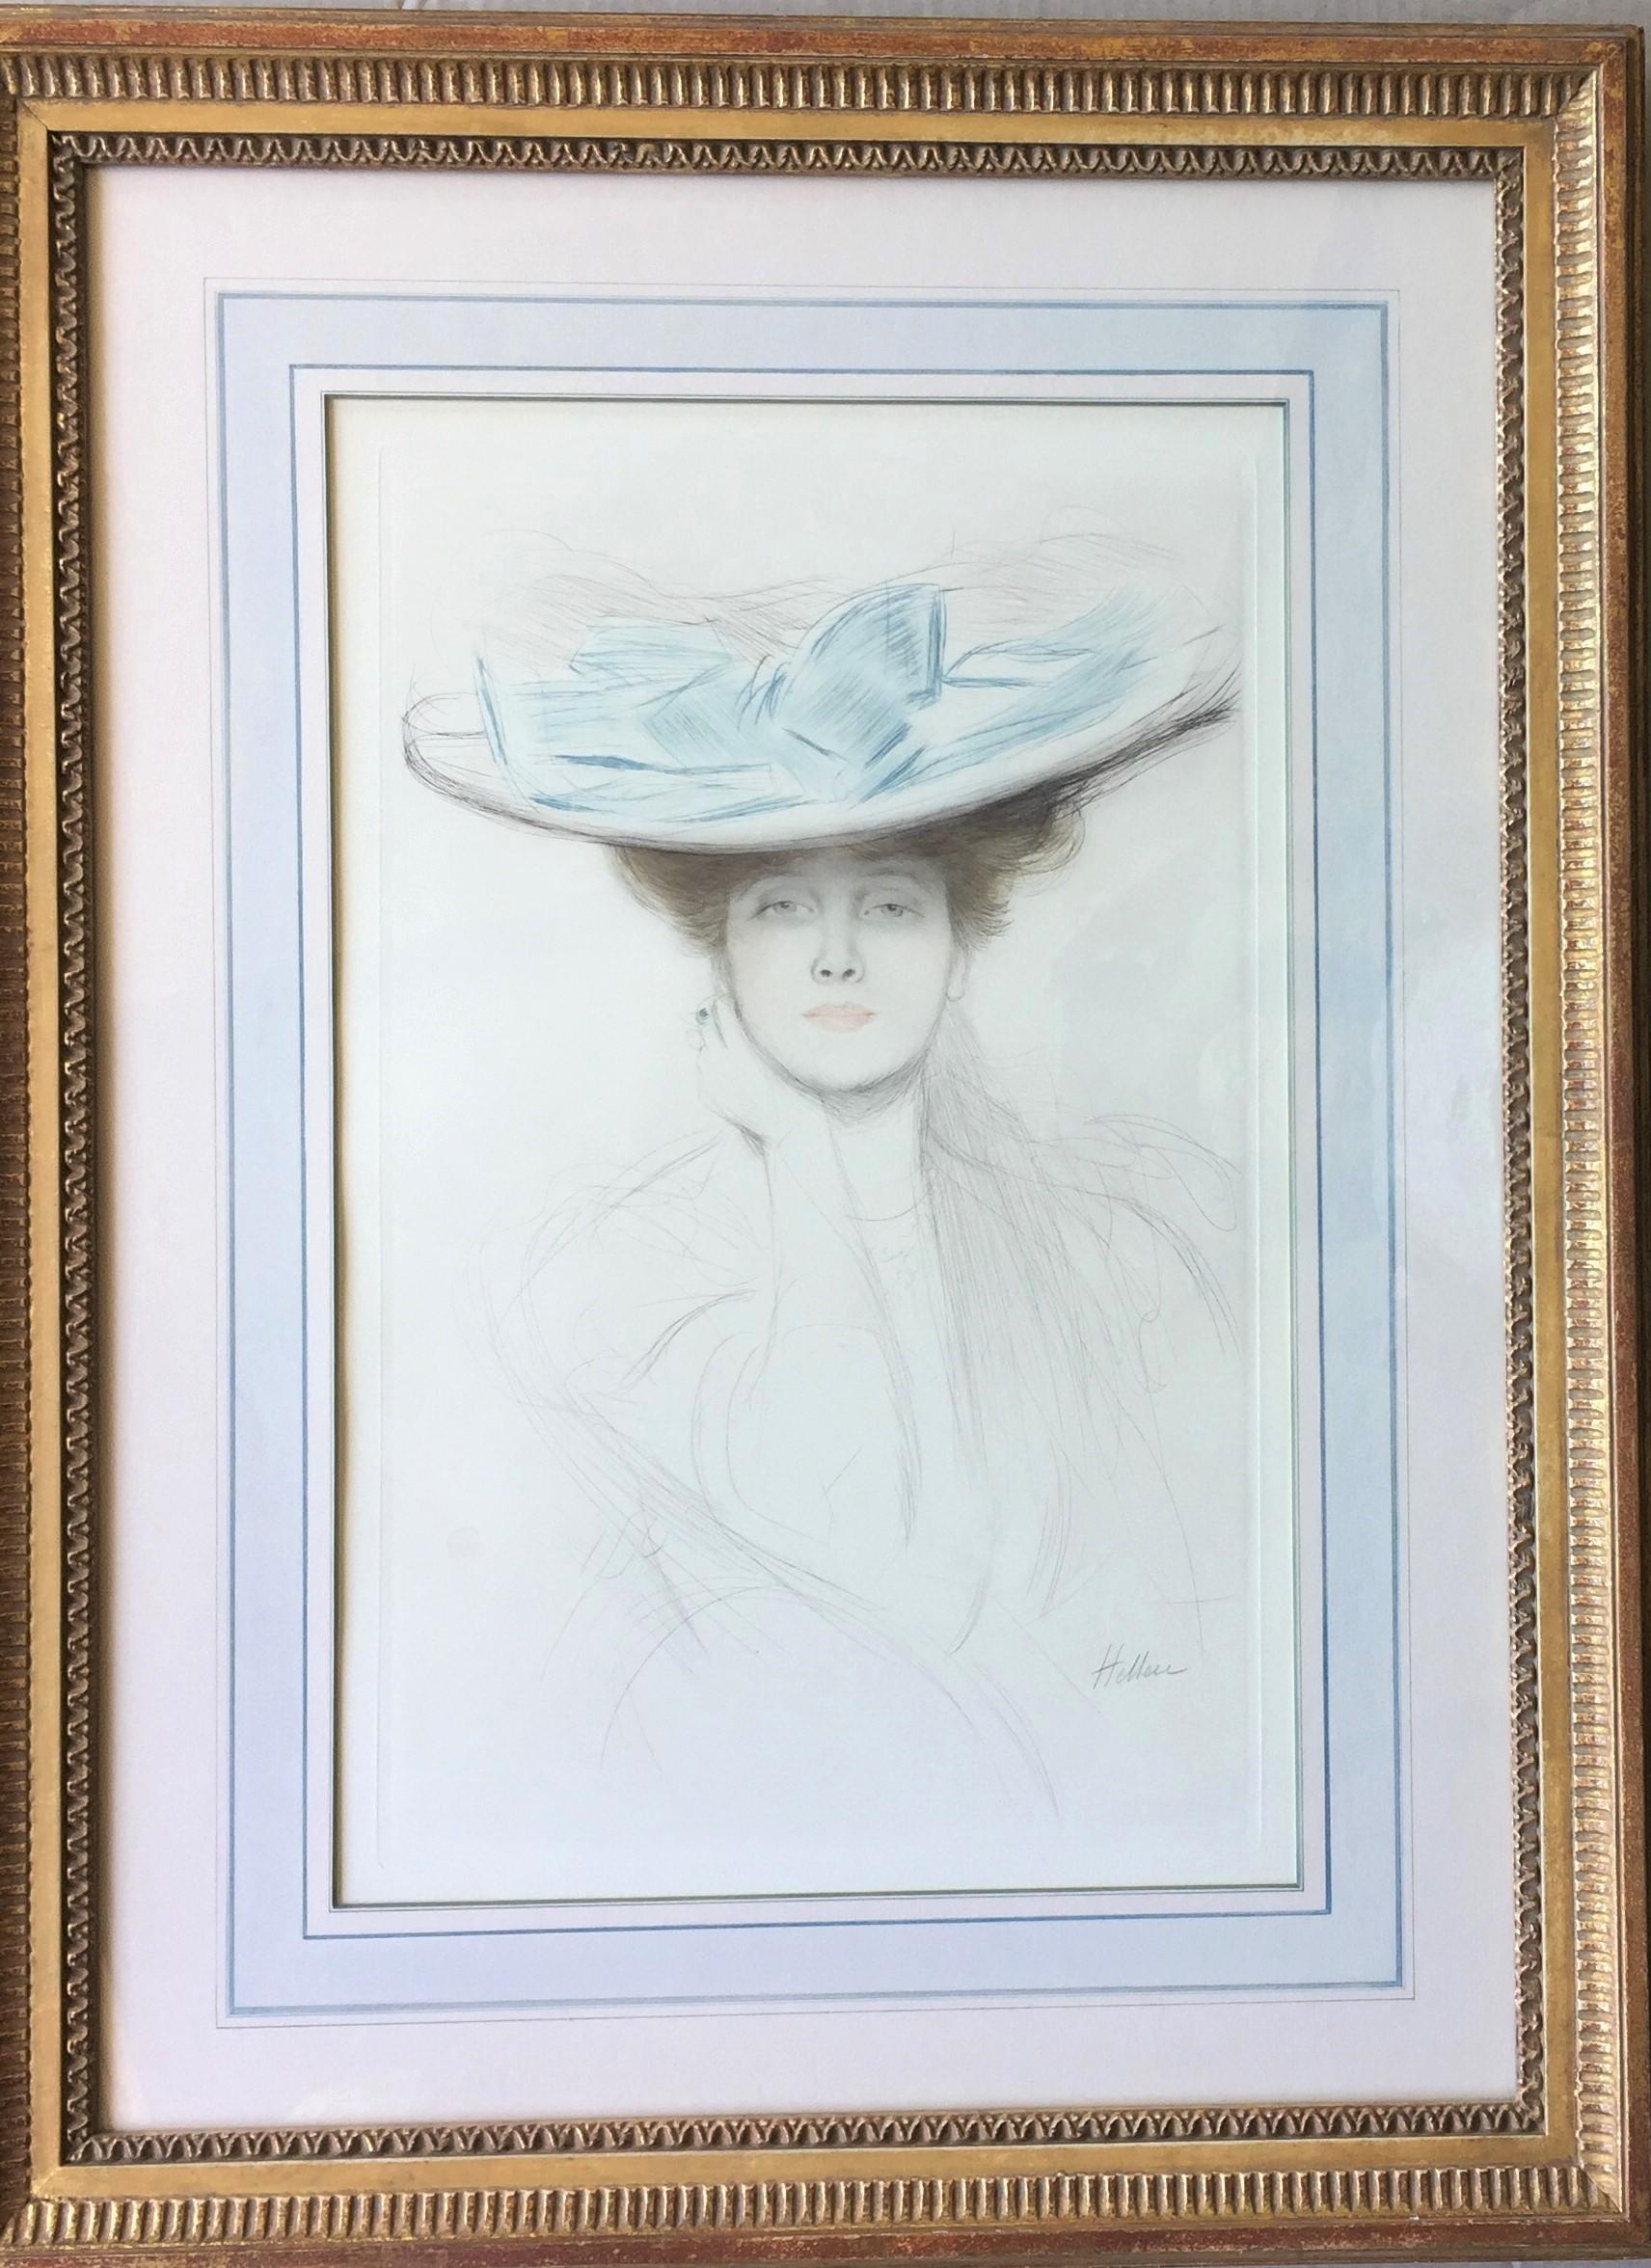 Paul César Helleu Portrait Print - Le Noeud Bleu (The Hat with the Blue Bow).